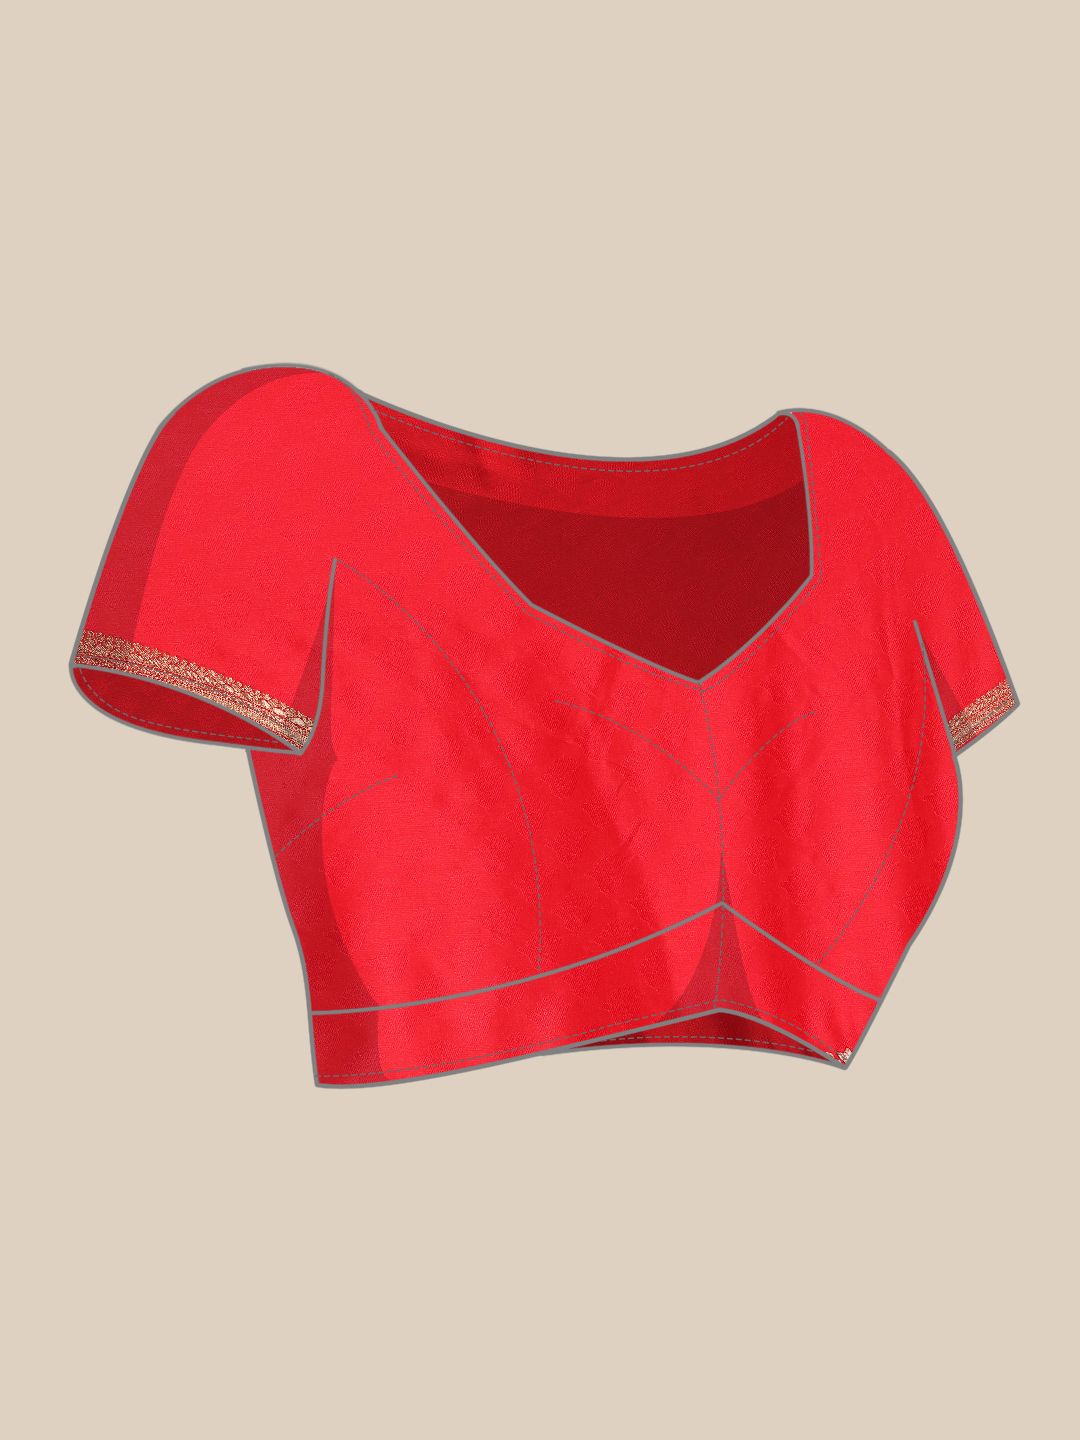 Red Color Soft silk Banarasi saree woven design